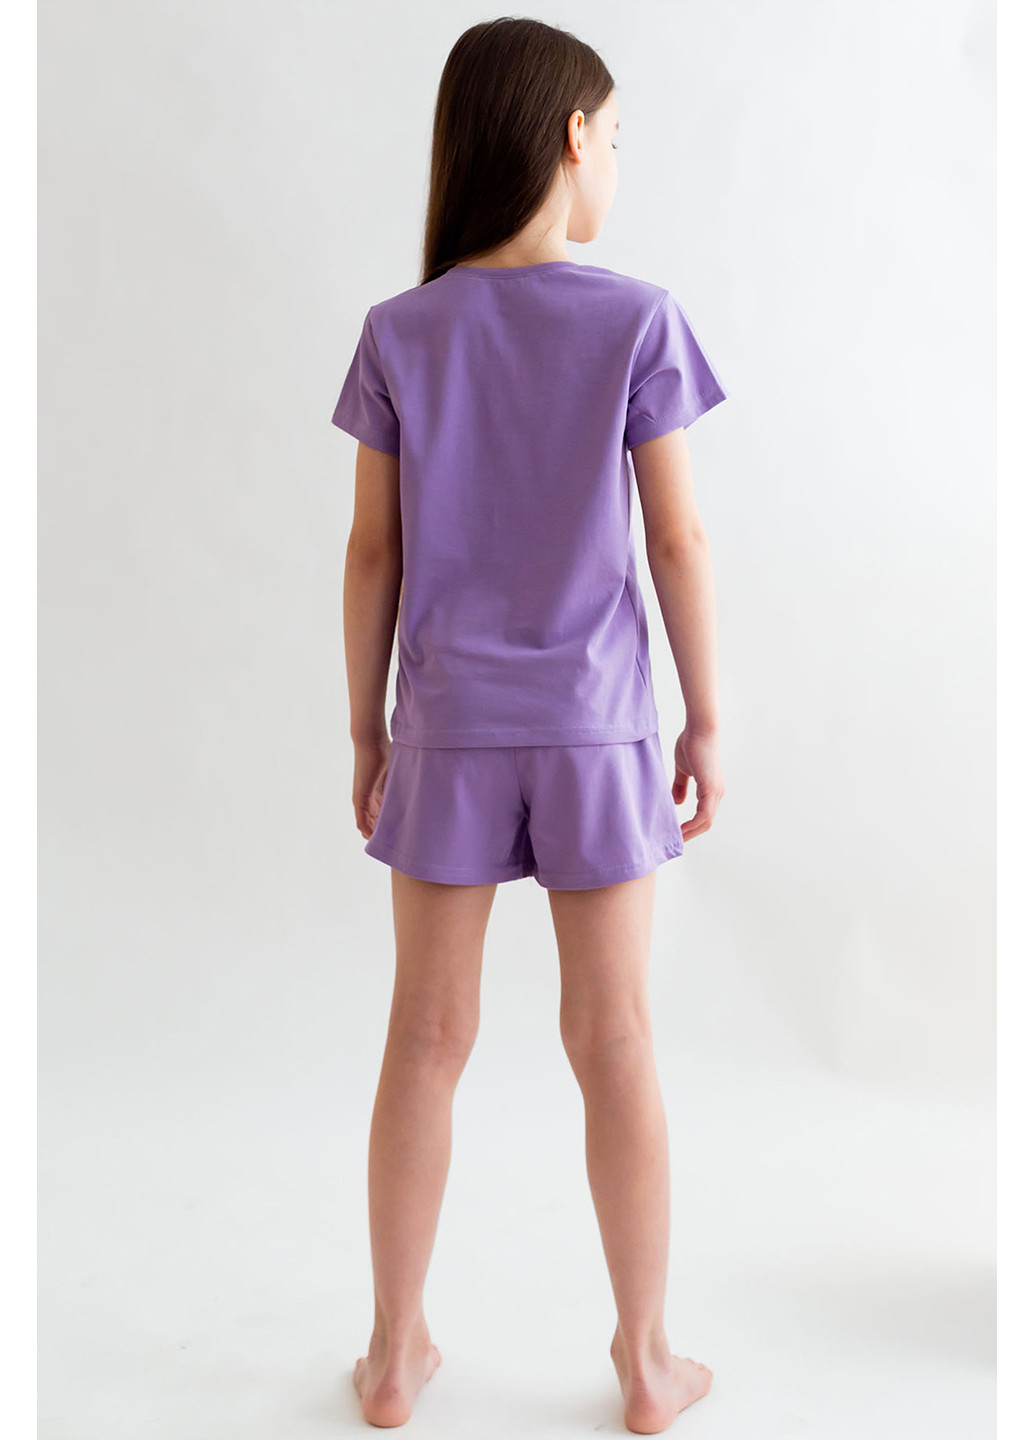 Сиреневая всесезон комплект для девочки футболка + шорты Kosta 2149-9